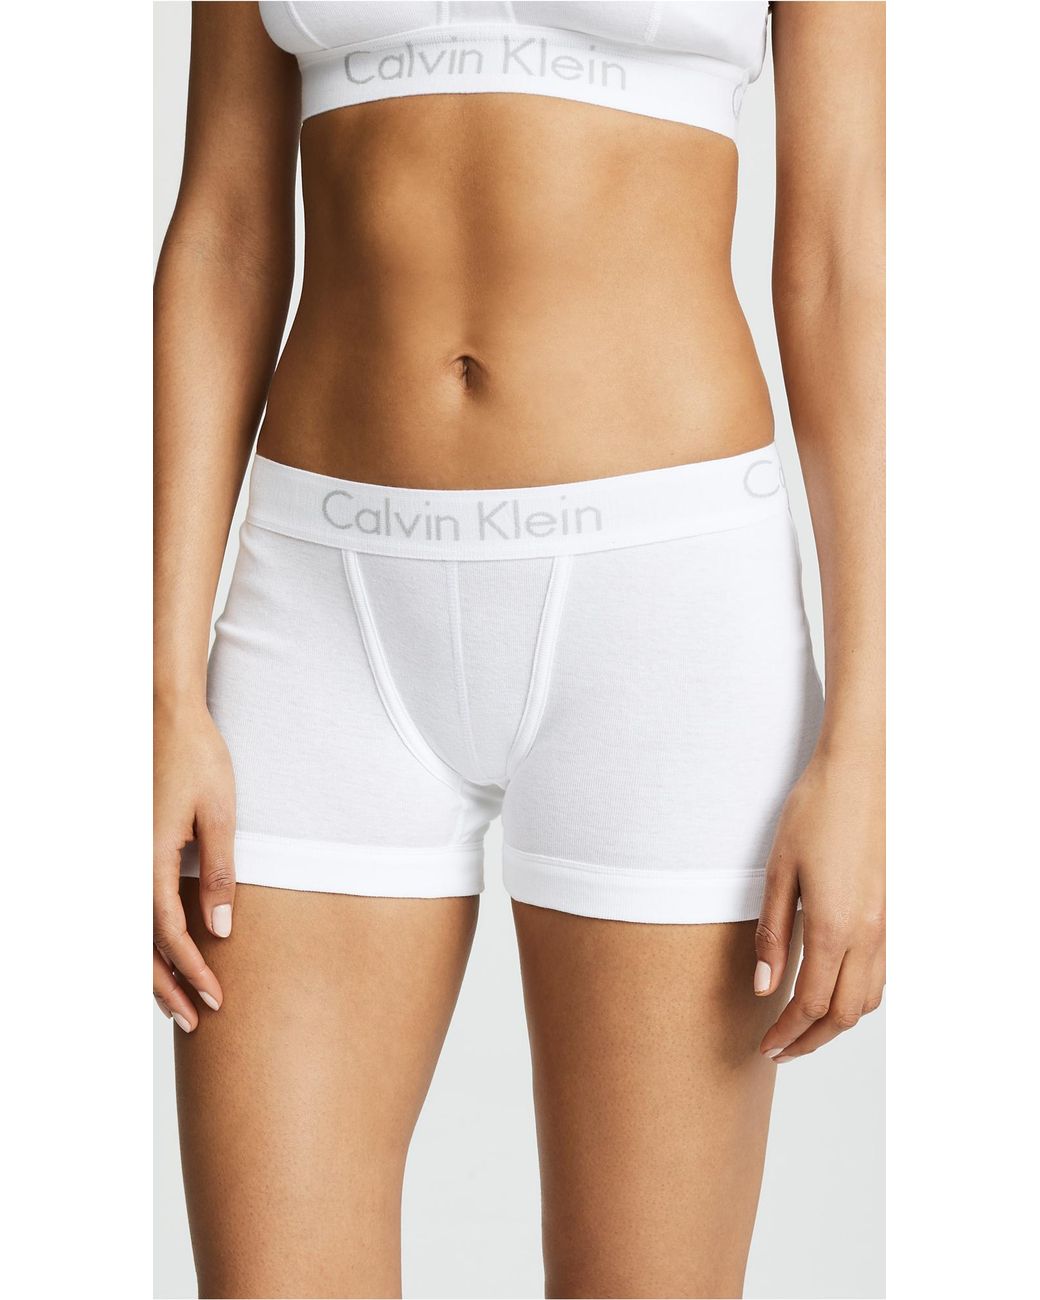 Descubrir 69+ imagen calvin klein boxer shorts womens